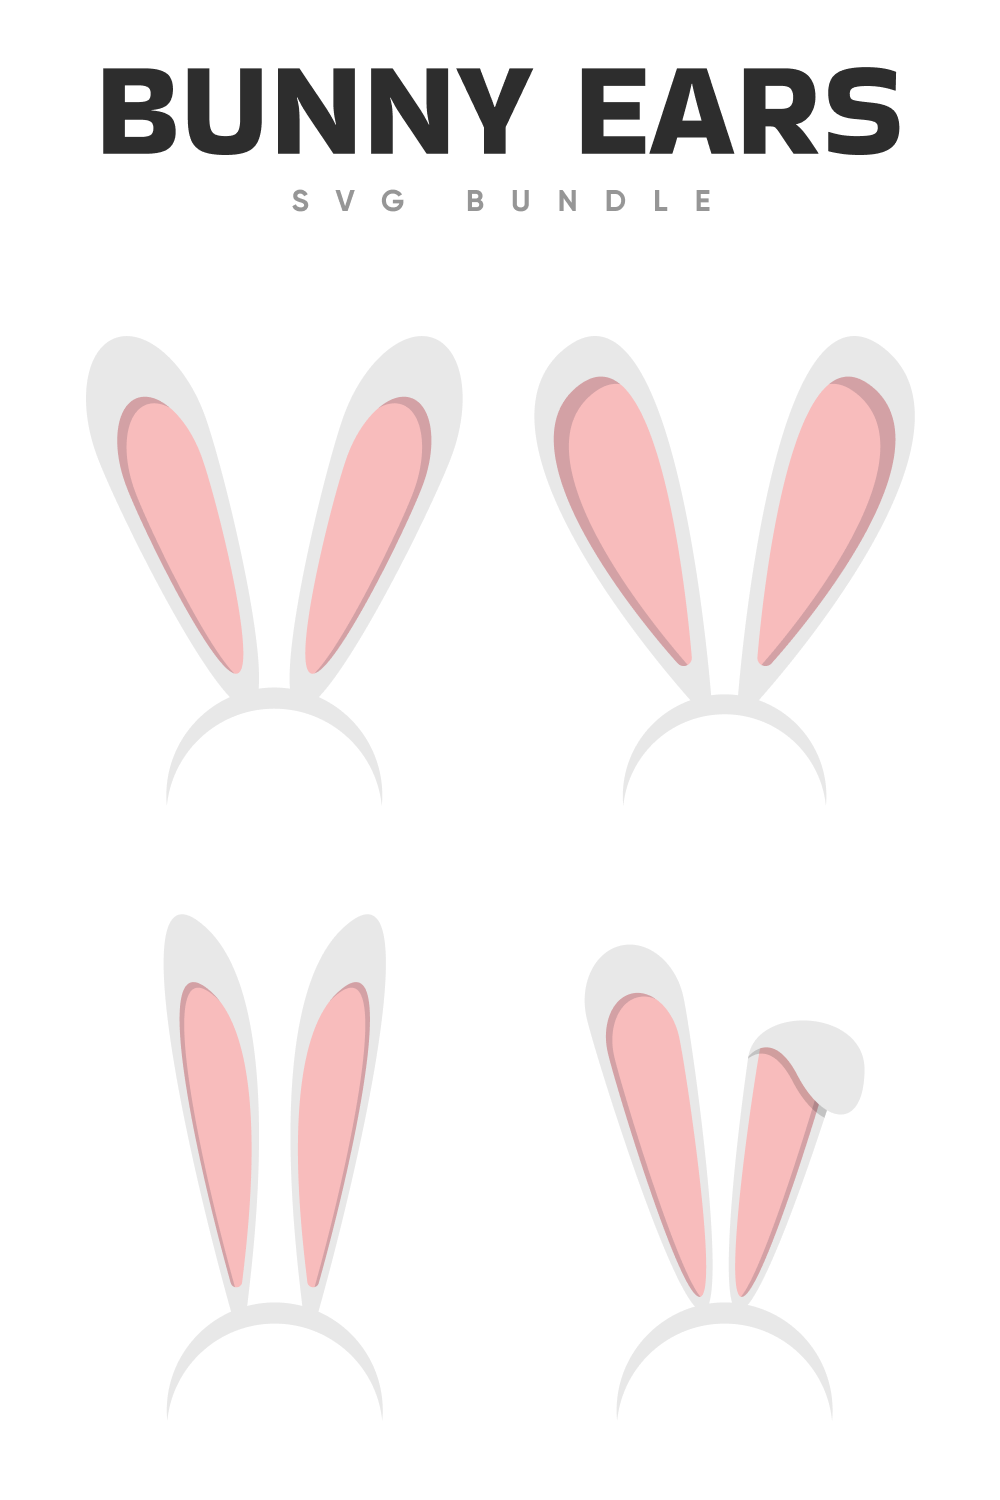 Bunny ears SVG bundle.